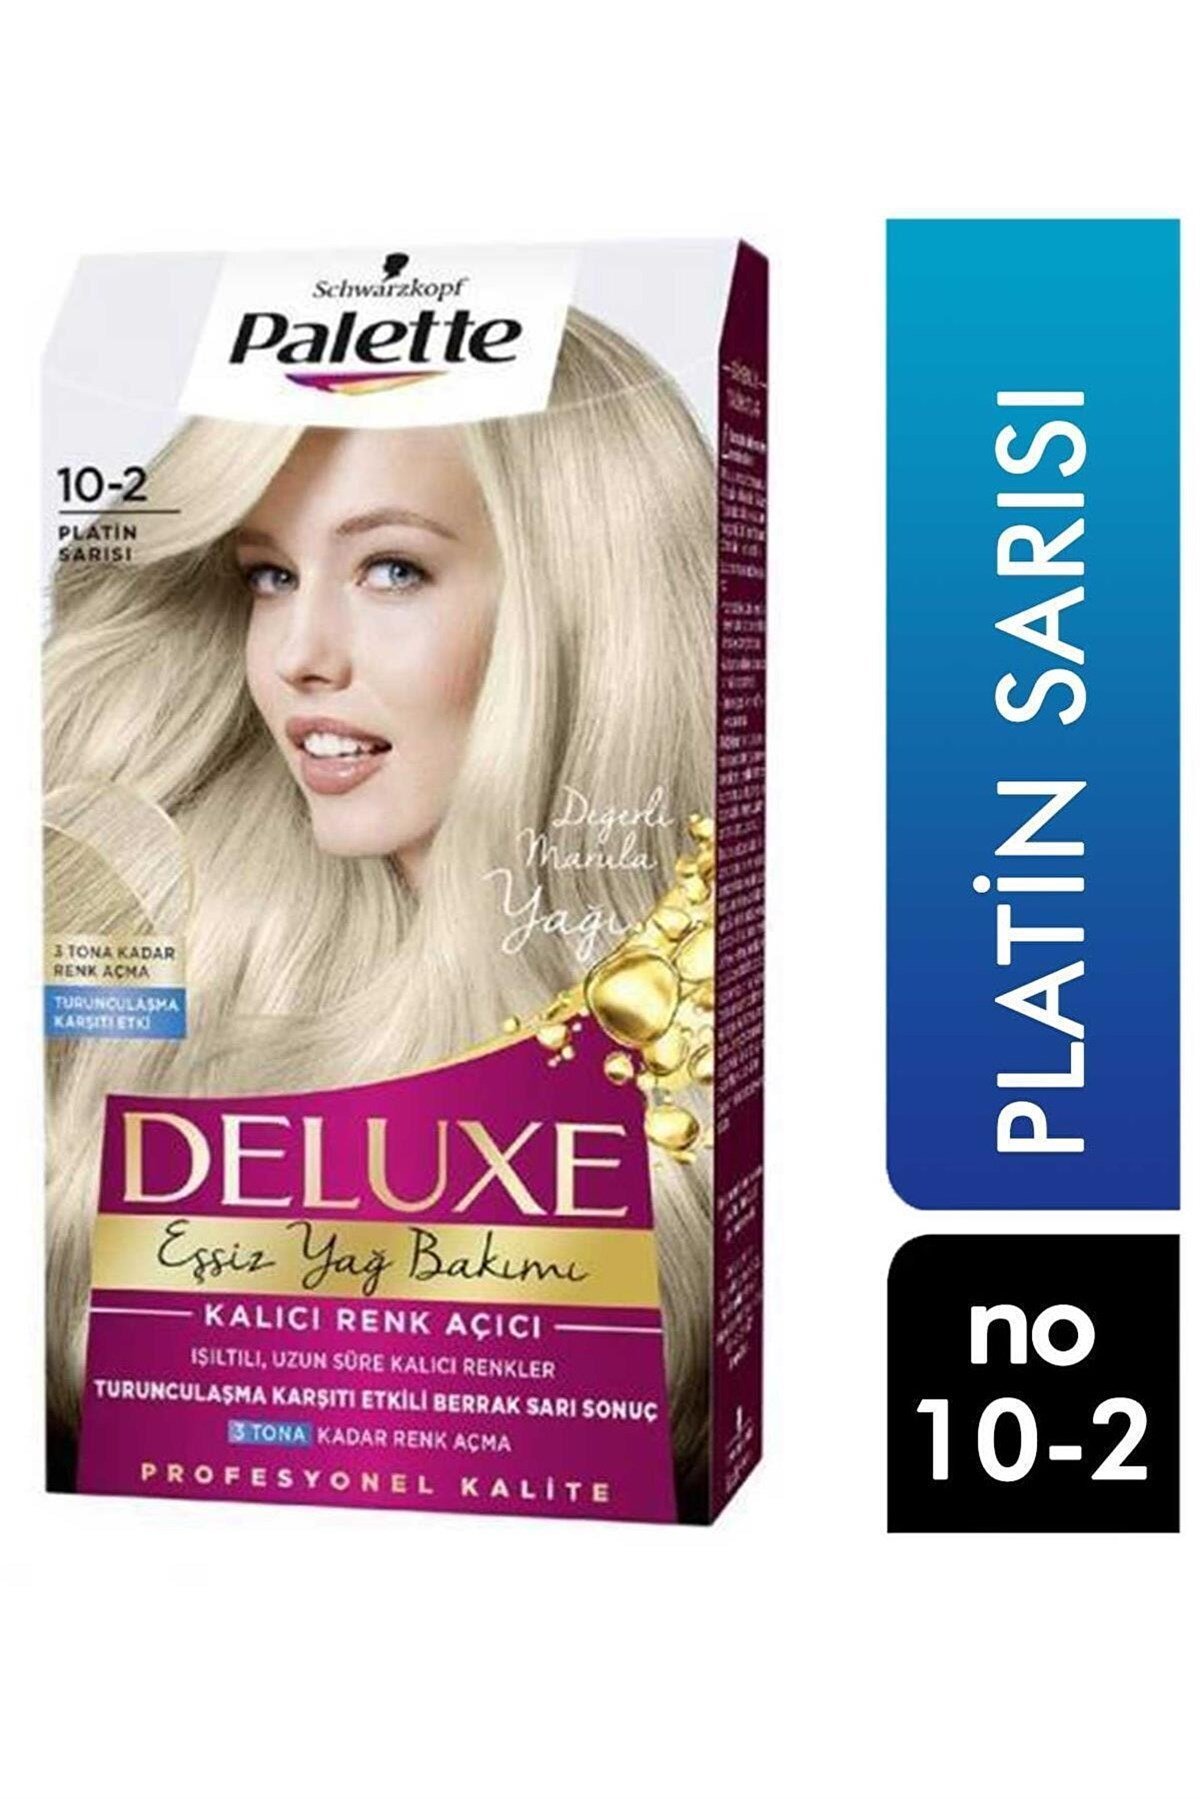 Palette Marka: Deluxe Eşsiz Yağ Bakımı Saç Boyası Platin Sarısı 10 2 |  Farma Ucuz